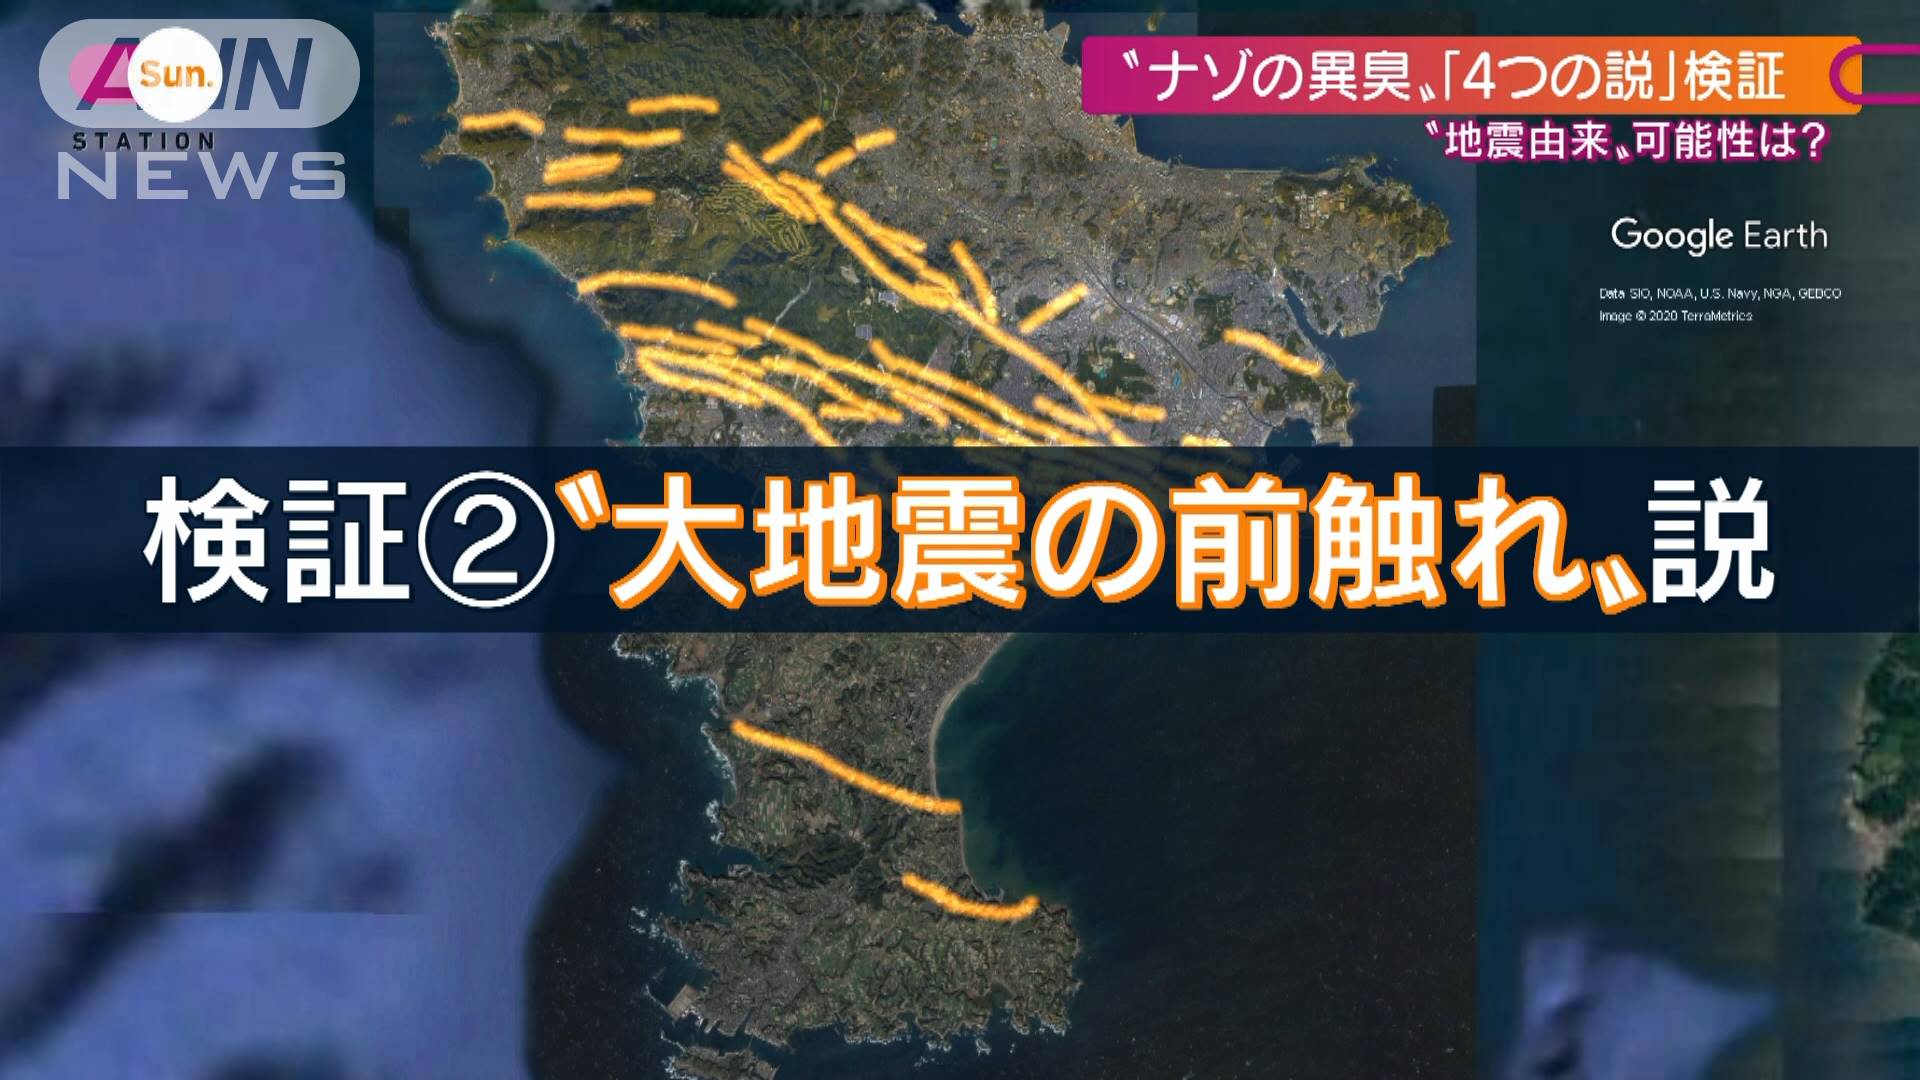 異臭 事件 横浜 神奈川県で発生している異臭の情報